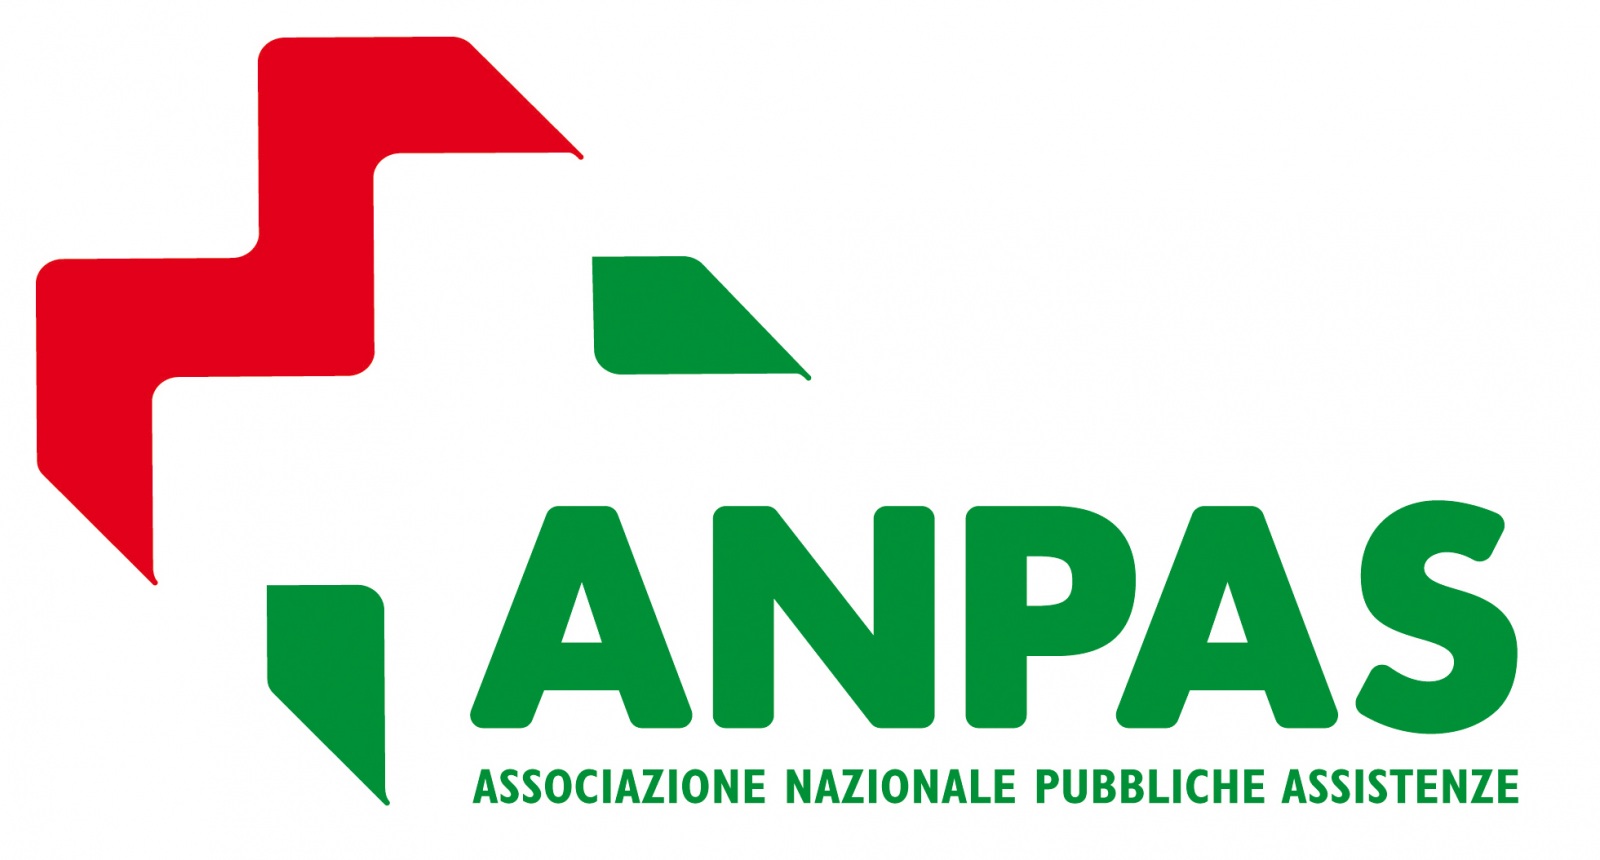 la più grande associazione laica italiana di volontariato